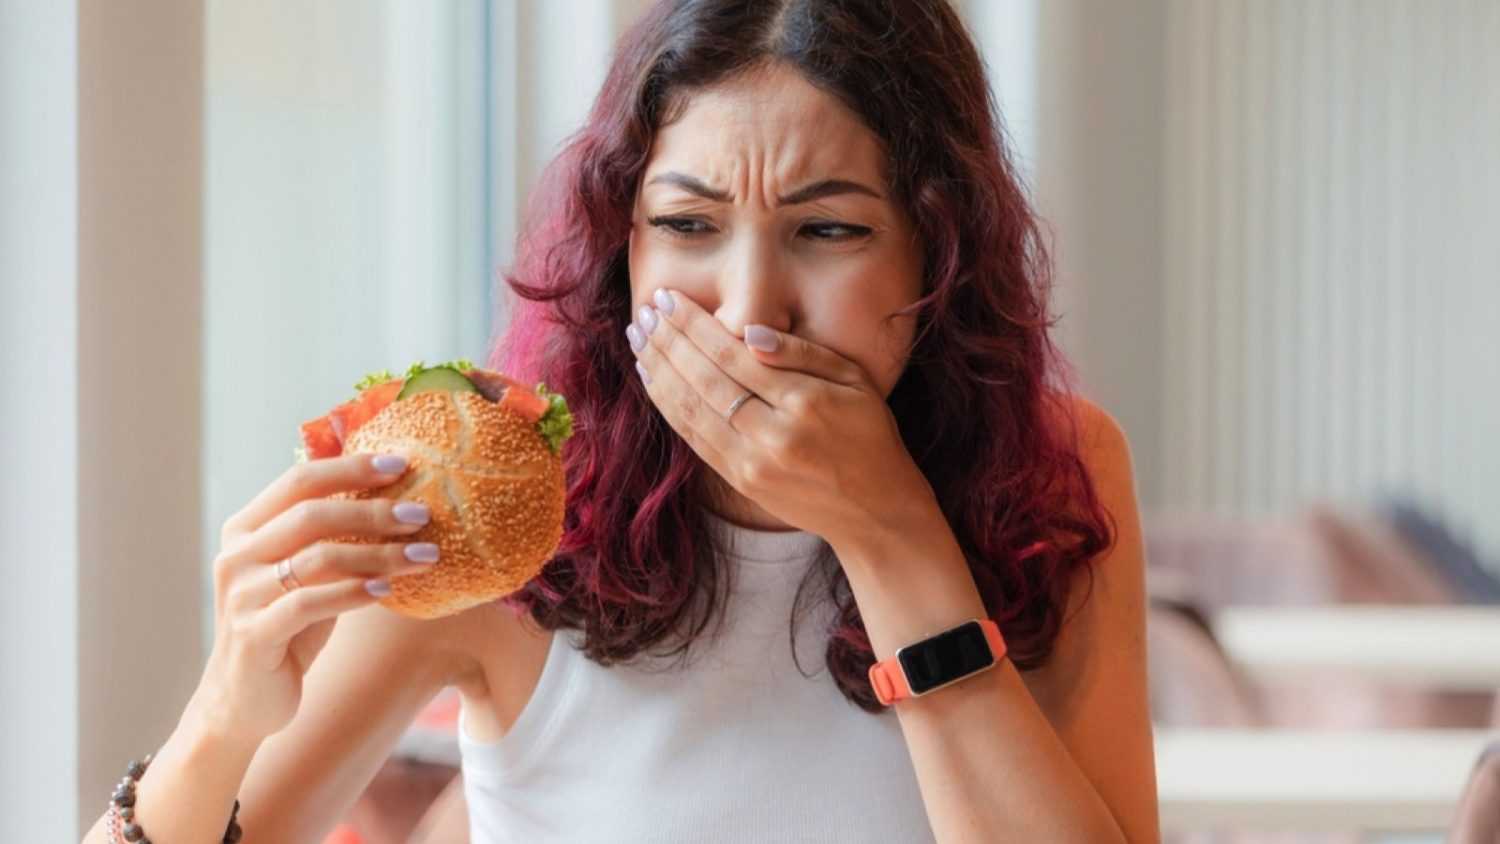 Woman eating burger closing mouth